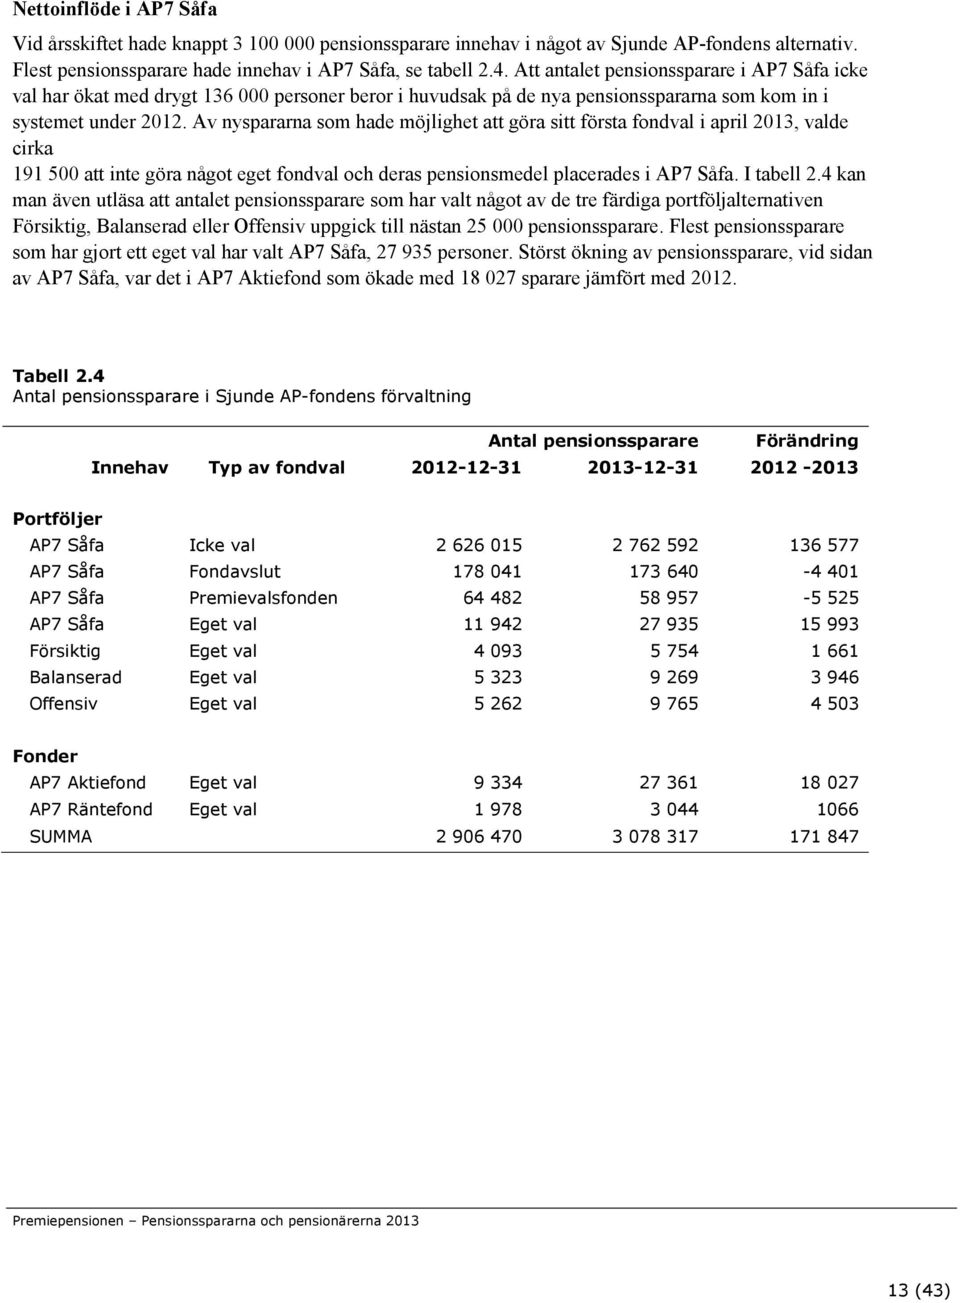 Av nyspararna som hade möjlighet att göra sitt första fondval i april 2013, valde cirka 191 500 att inte göra något eget fondval och deras pensionsmedel placerades i AP7 Såfa. I tabell 2.